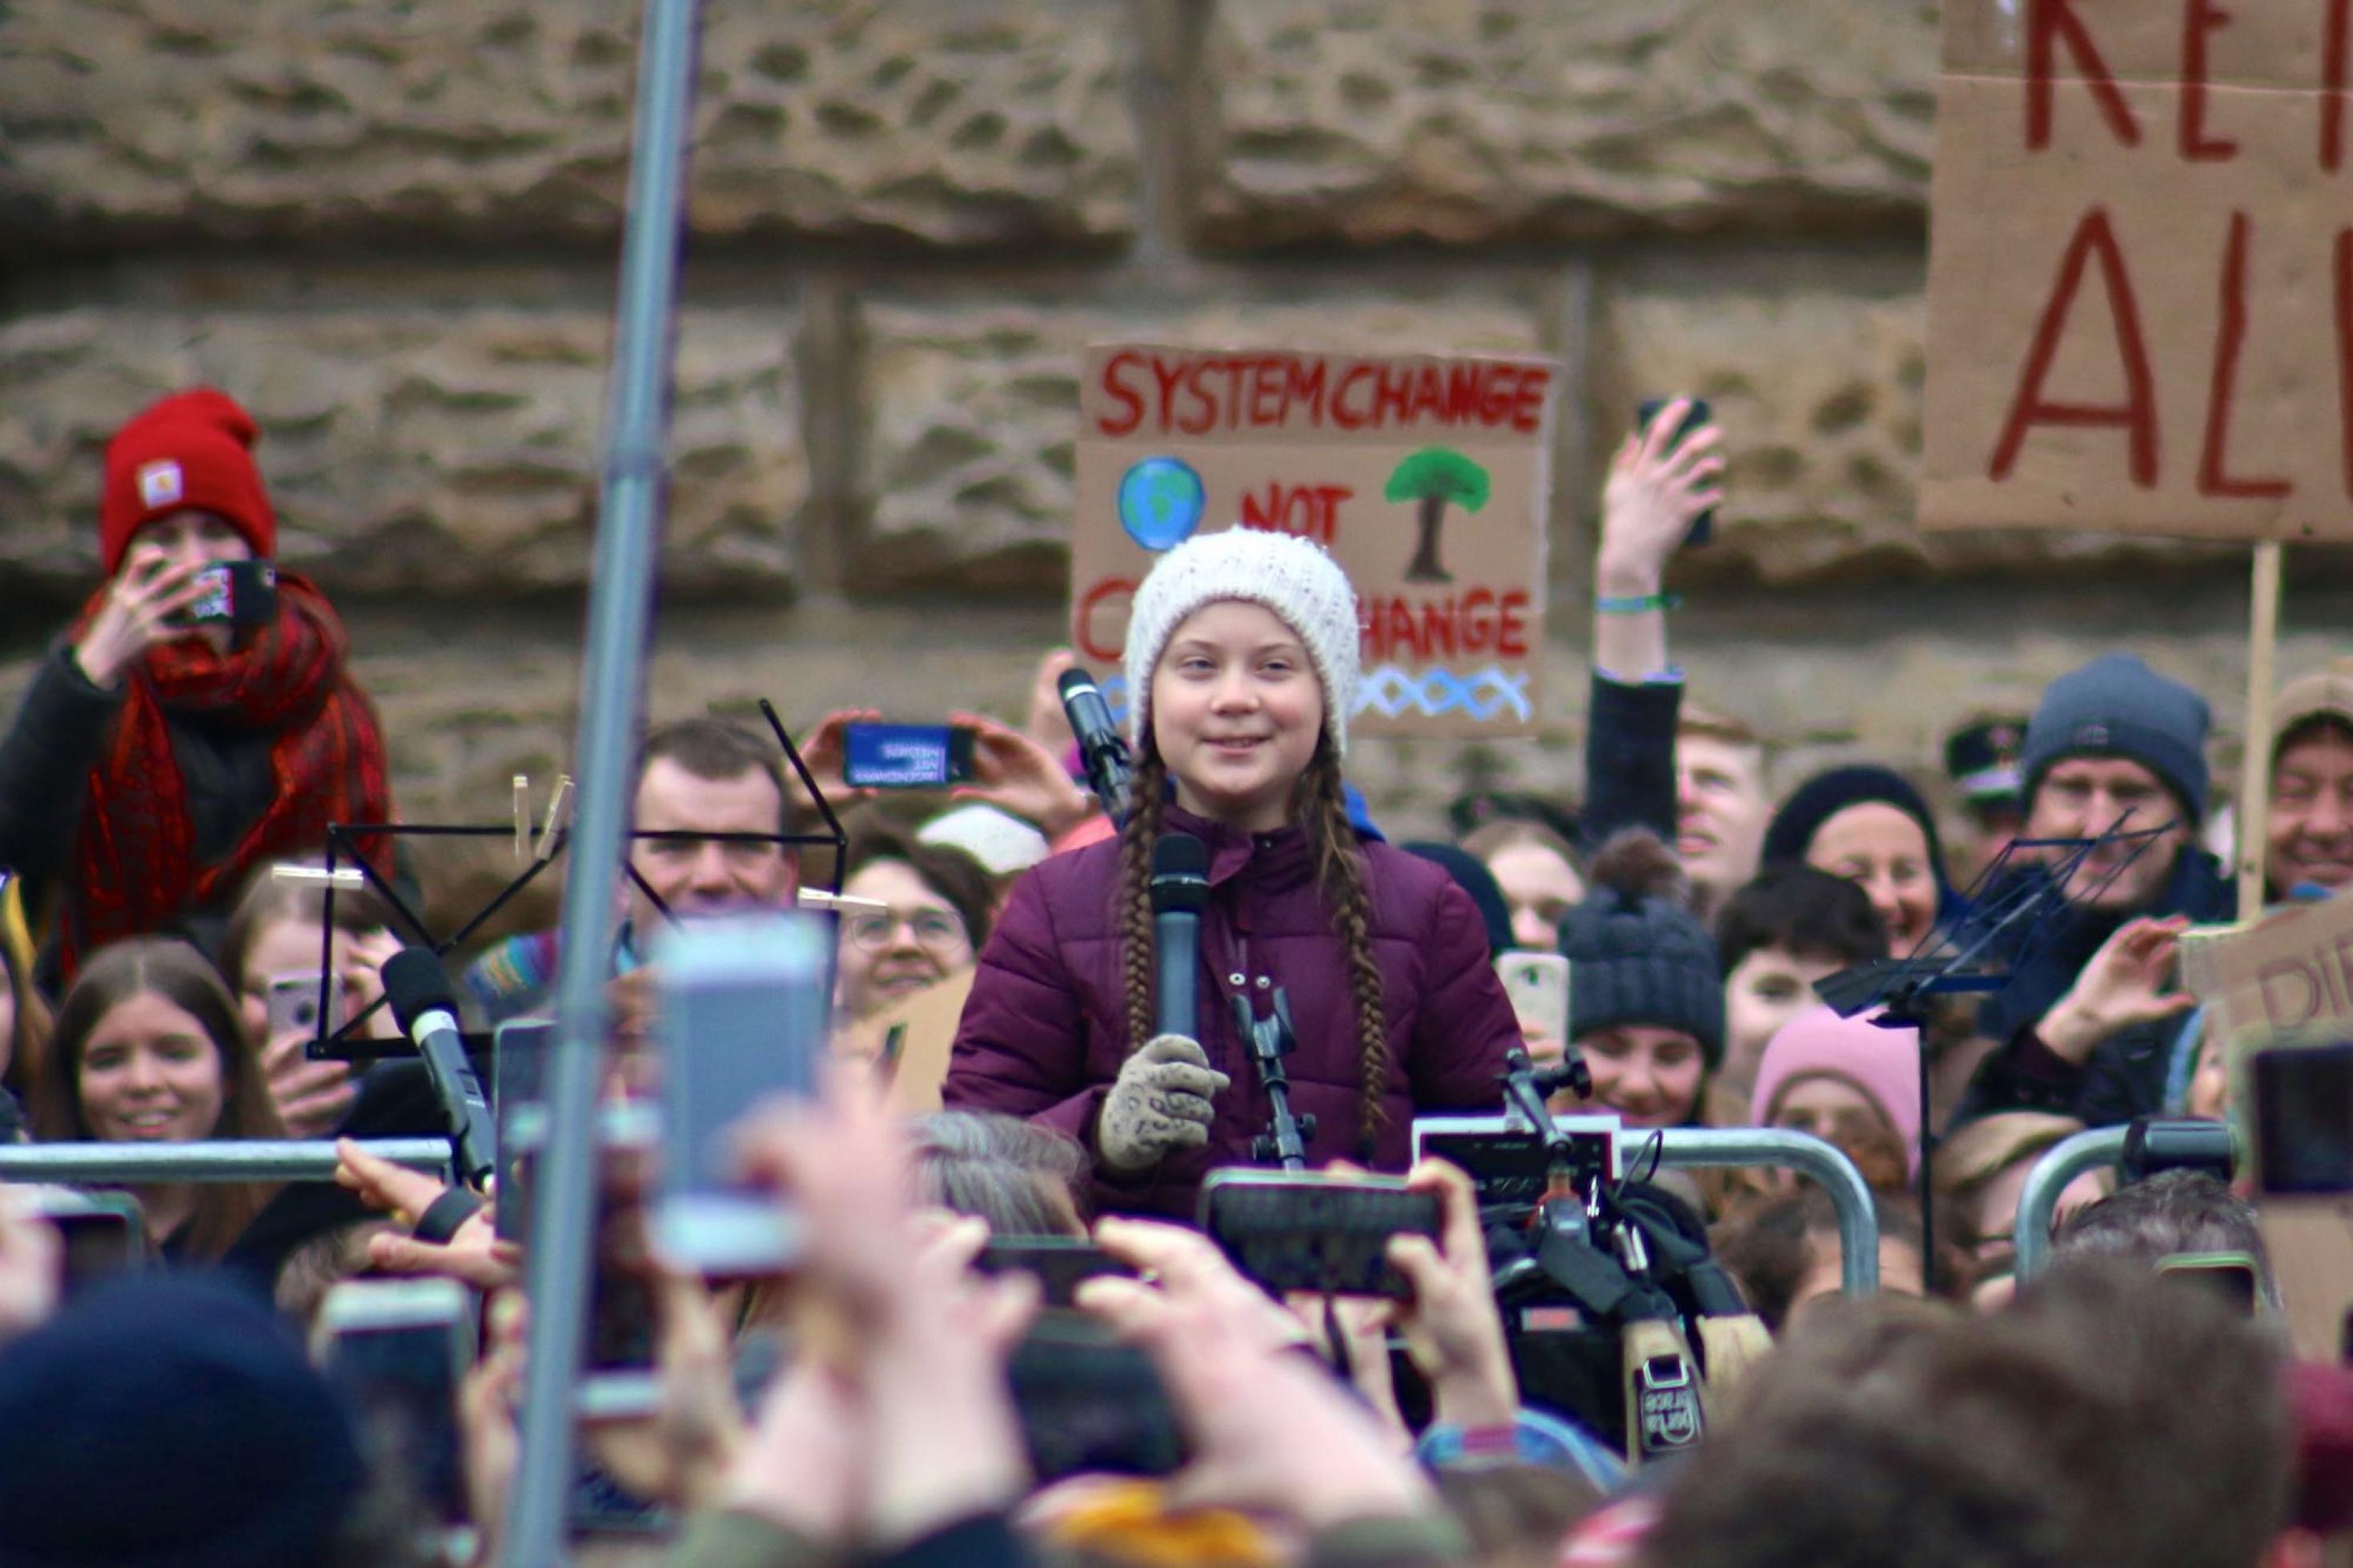 Am Mikrophon steht eine junge, schmächtige Frau mit langen Zöpfen unter einer weißen Strickmütze. Moin, sagt Greta Thunberg als erstes. „Wir streiken, weil wir unsere Hausaufgaben gemacht haben, aber die haben es nicht.“